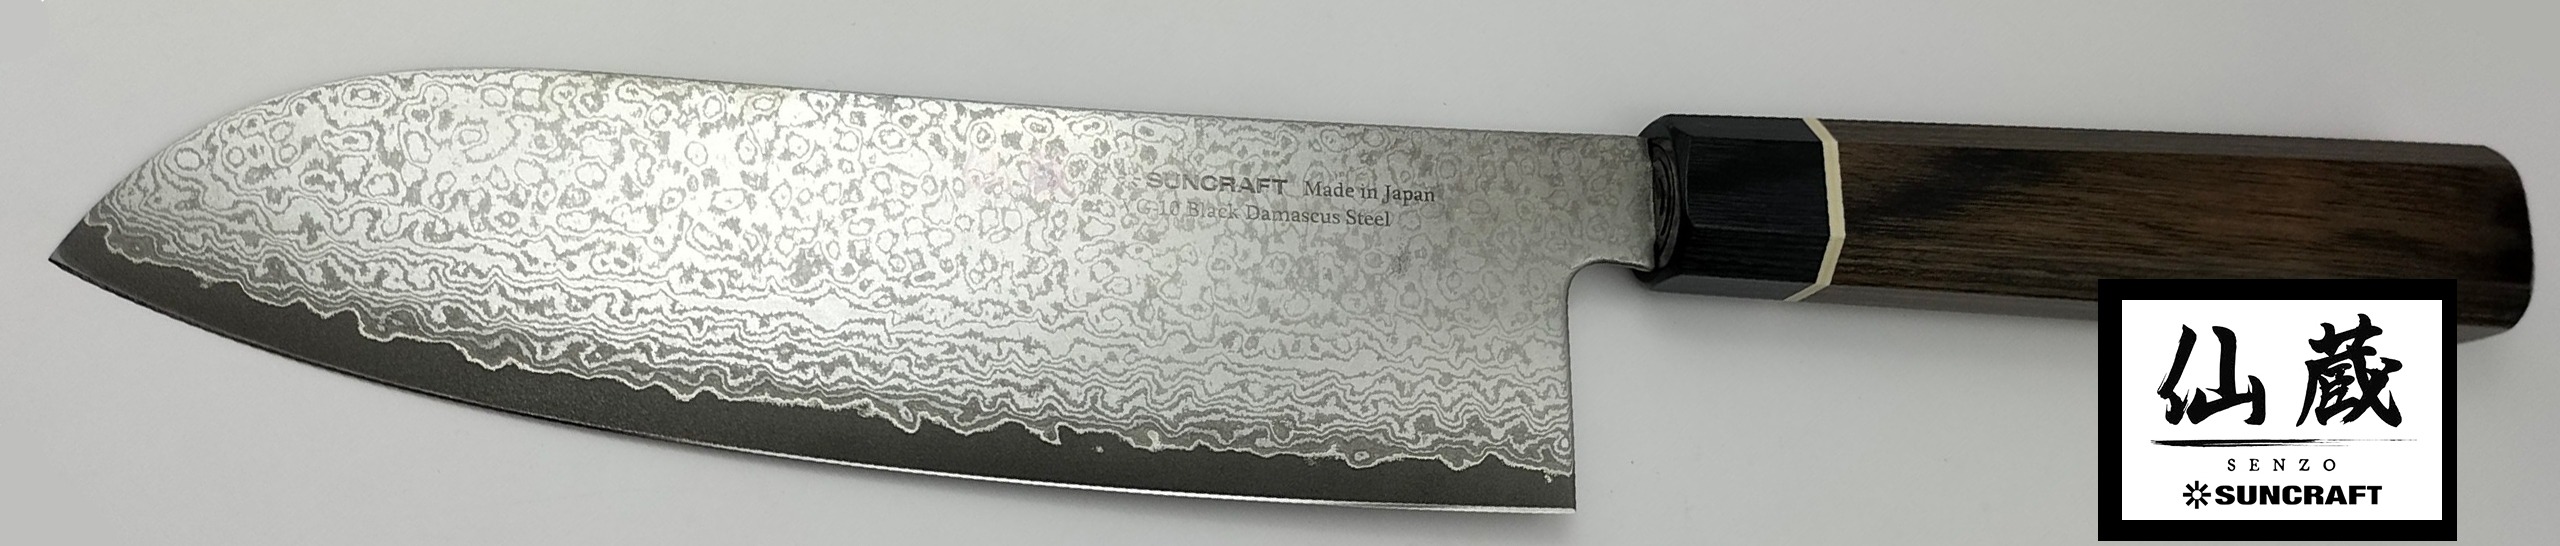 Couteau Japonais  Suncraft Senzo paris